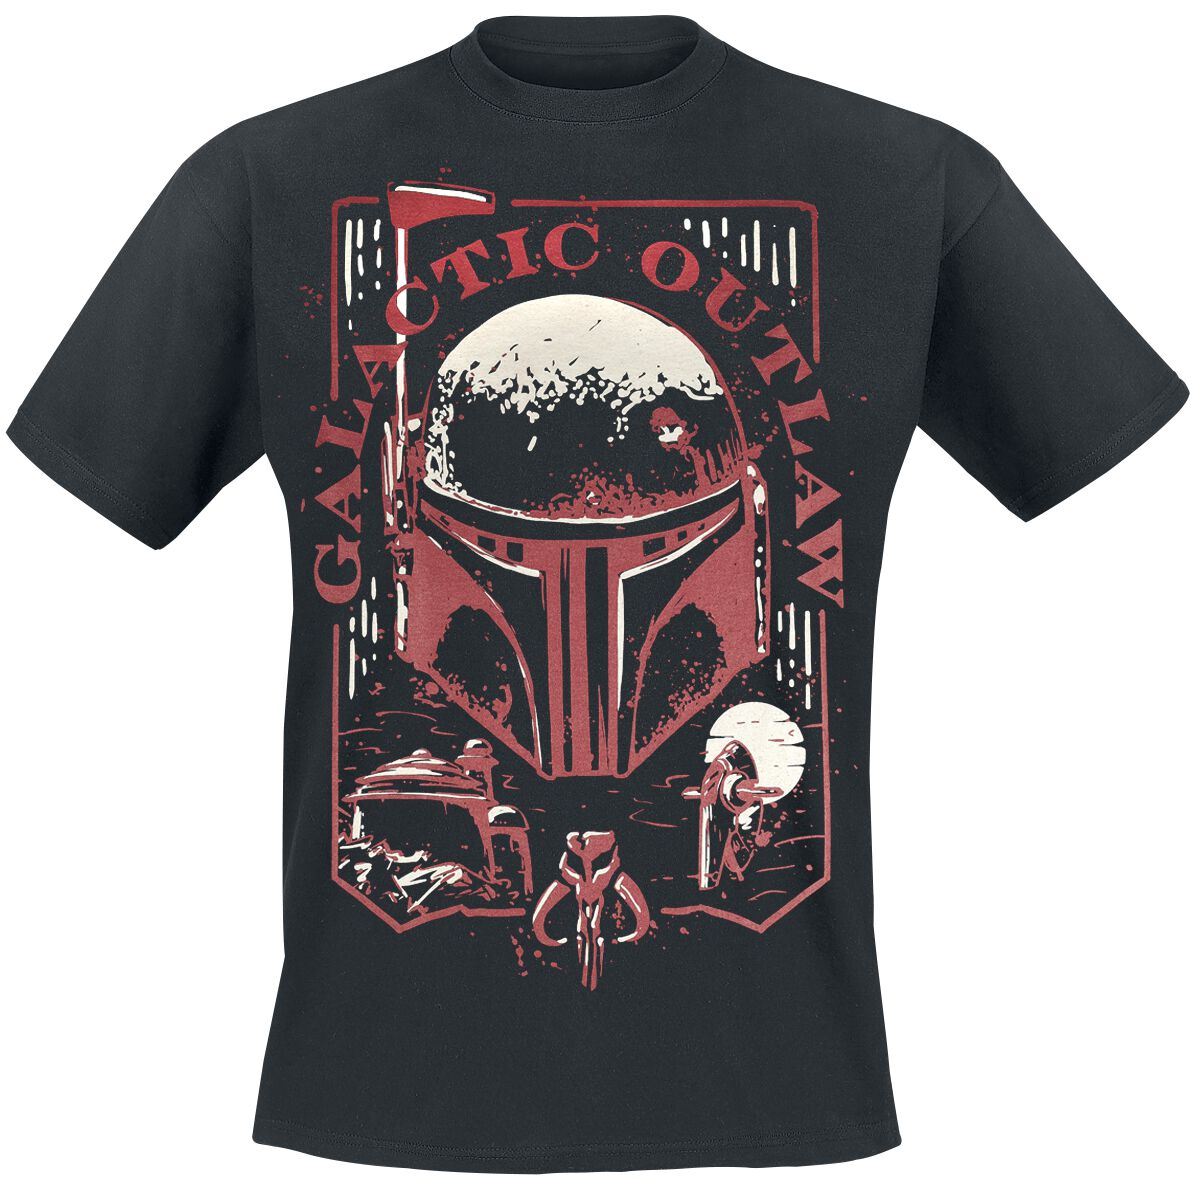 Star Wars T-Shirt - The Book Of Boba Fett - Galactic Outlaw - S bis 4XL - für Männer - Größe S - schwarz  - EMP exklusives Merchandise!